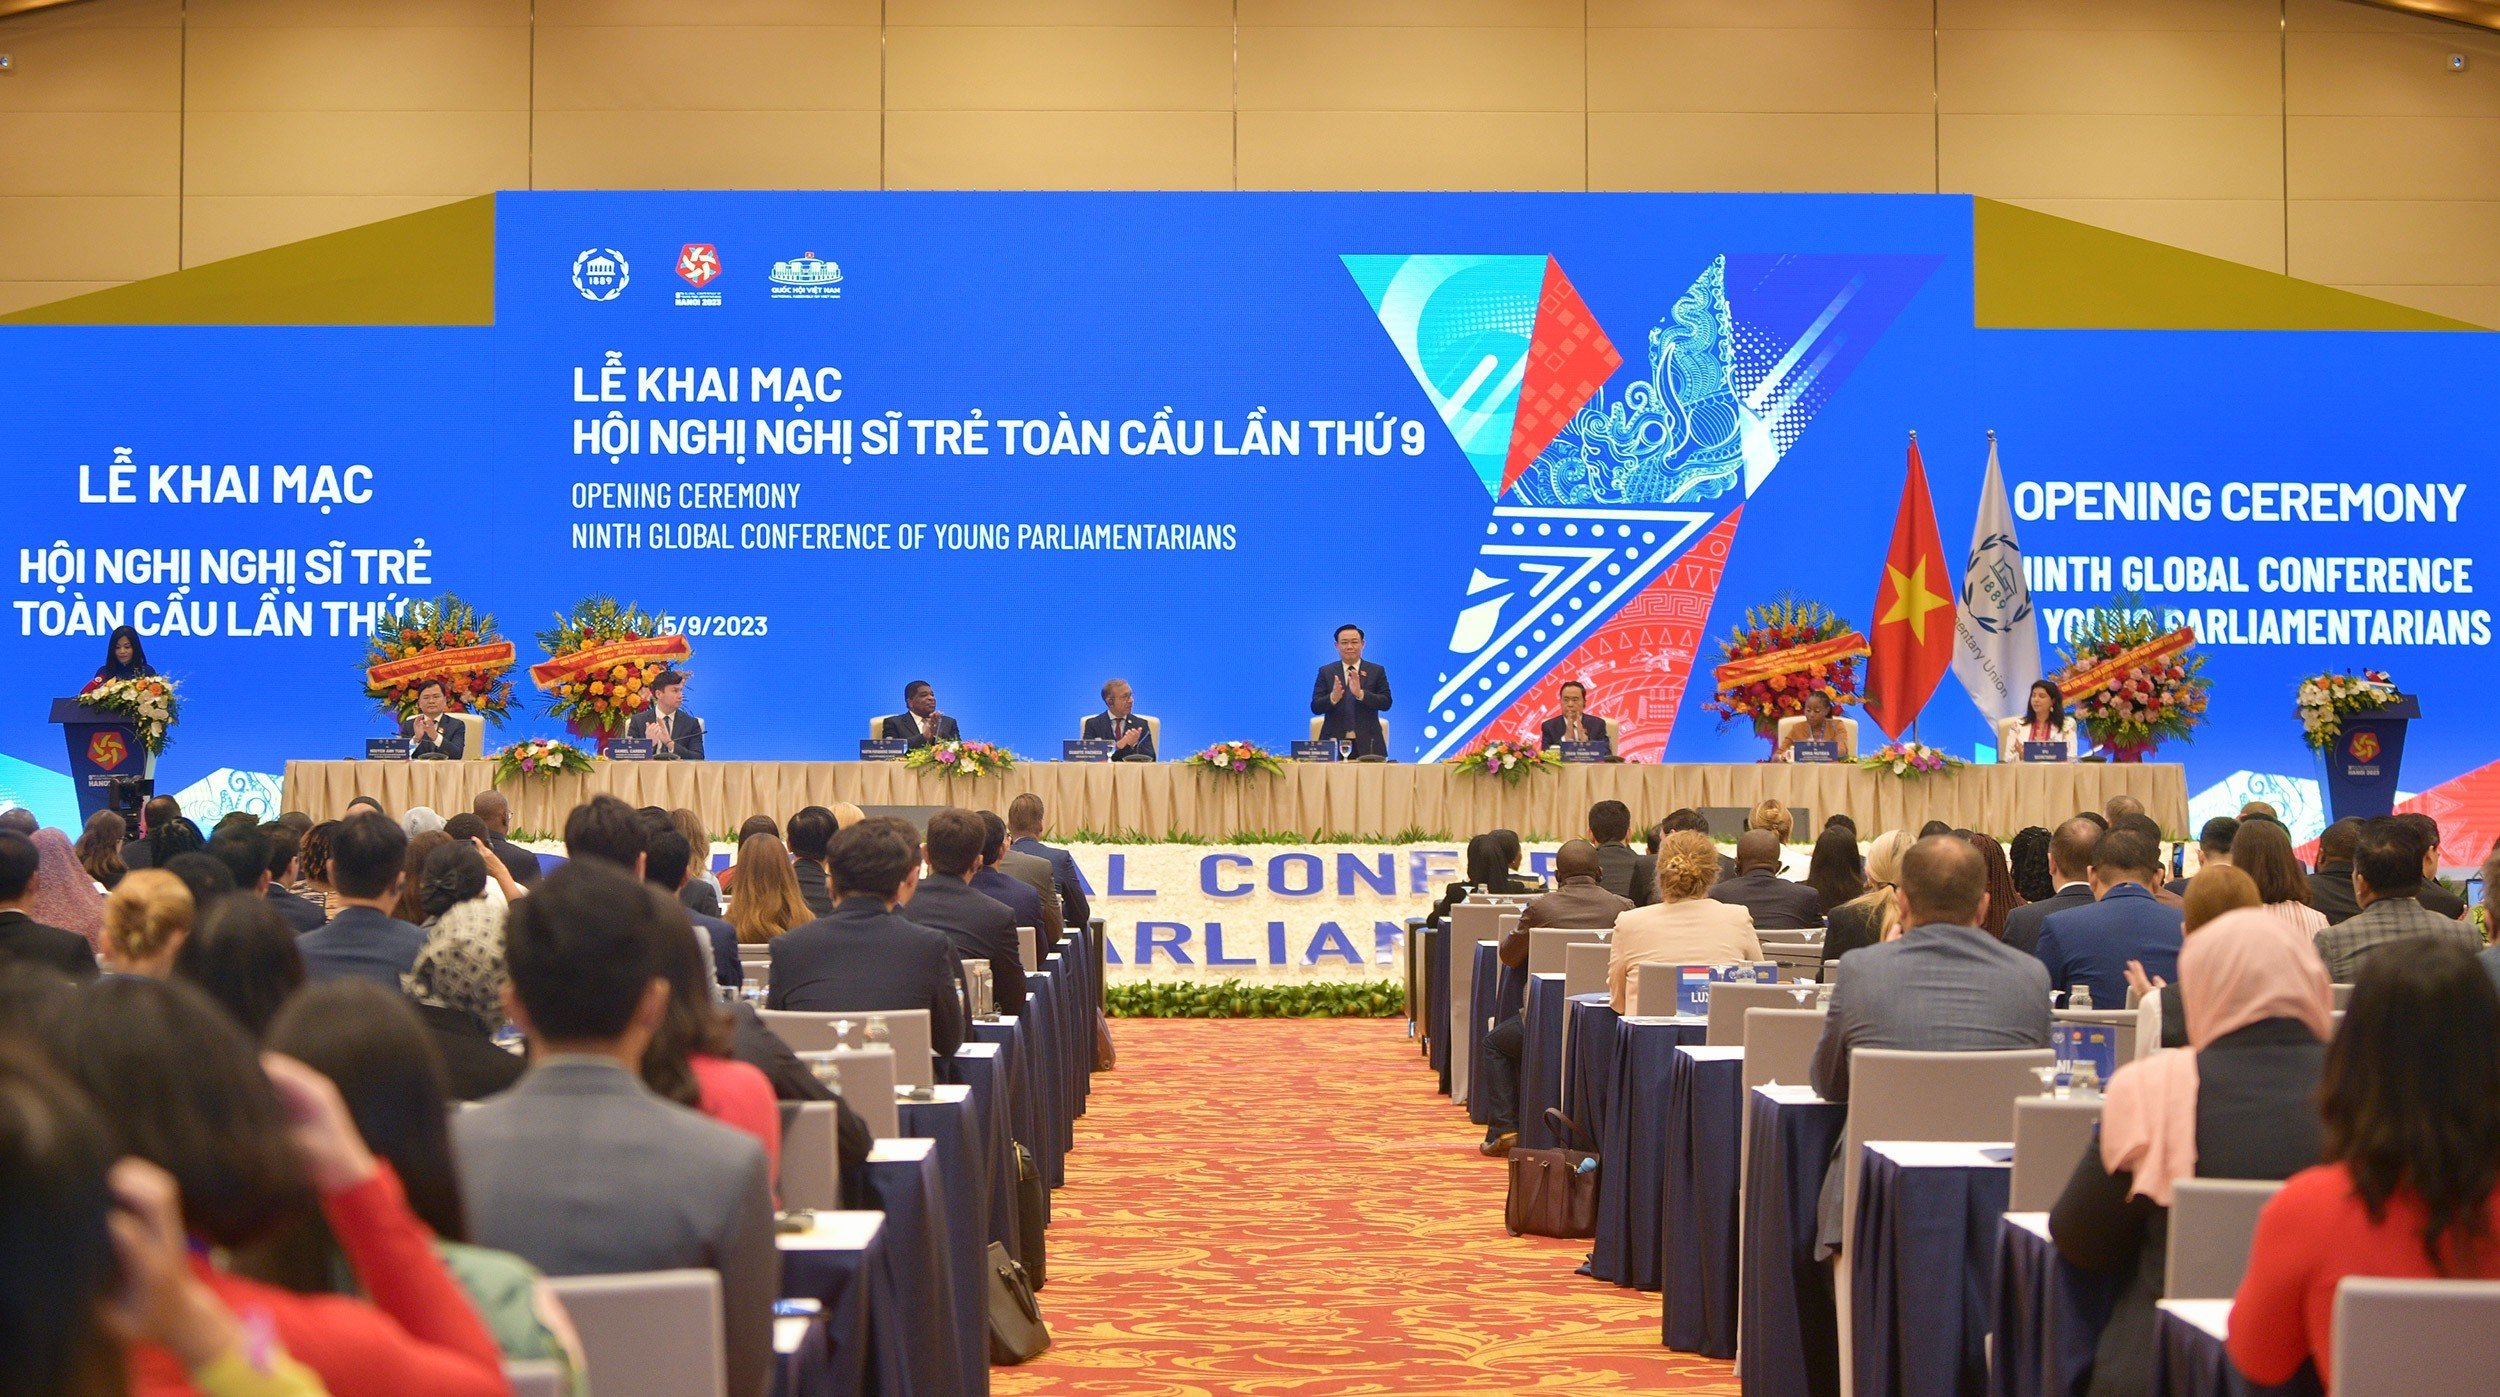 Hội nghị Nghị sĩ trẻ toàn cầu lần thứ 9 diễn ra tại Hà Nội